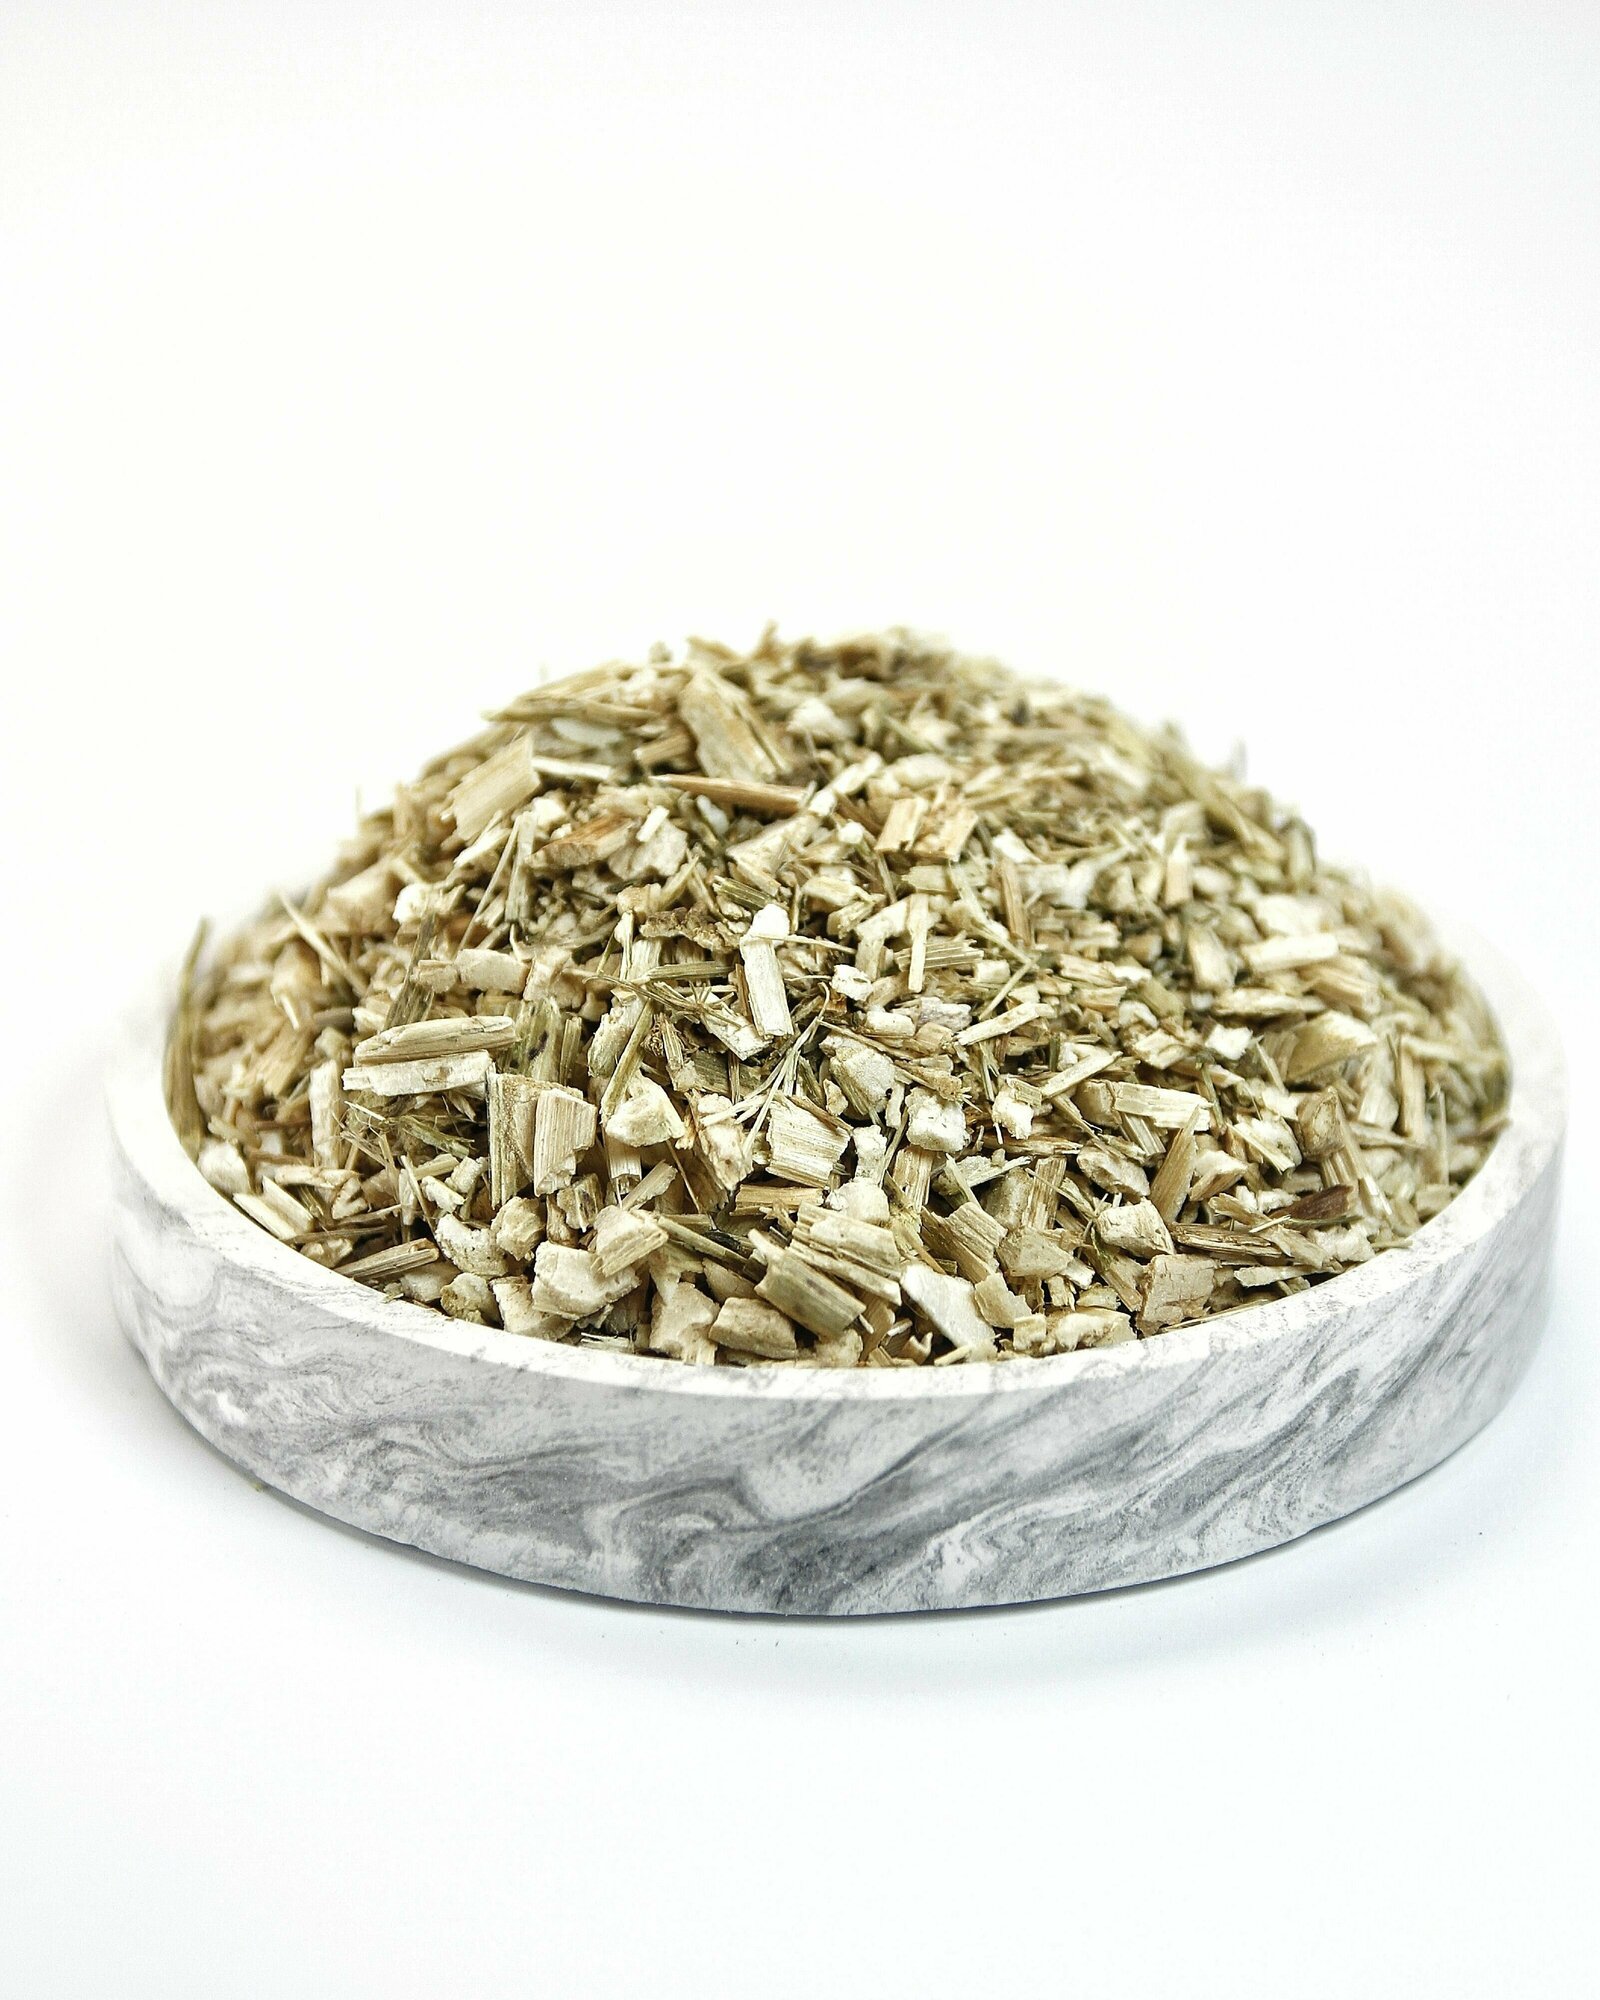 Болиголов крапчатый 50 гр - трава сушеная, травяной чай, фиточай, фитосбор (Болиголов пятнистый, Омег)